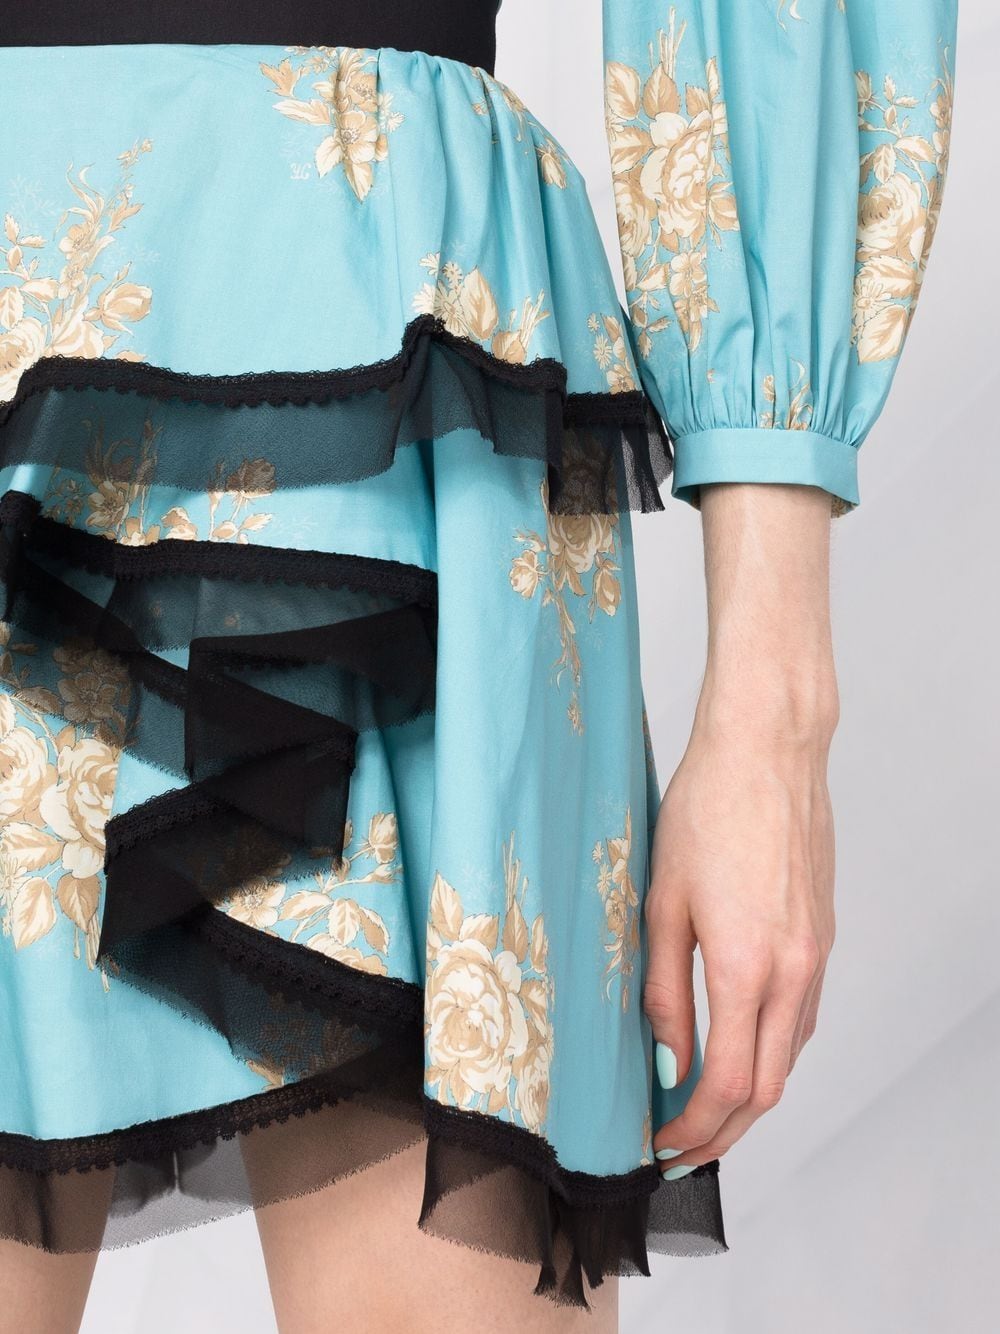 фото Ulyana sergeenko юбка асимметричного кроя с цветочным принтом